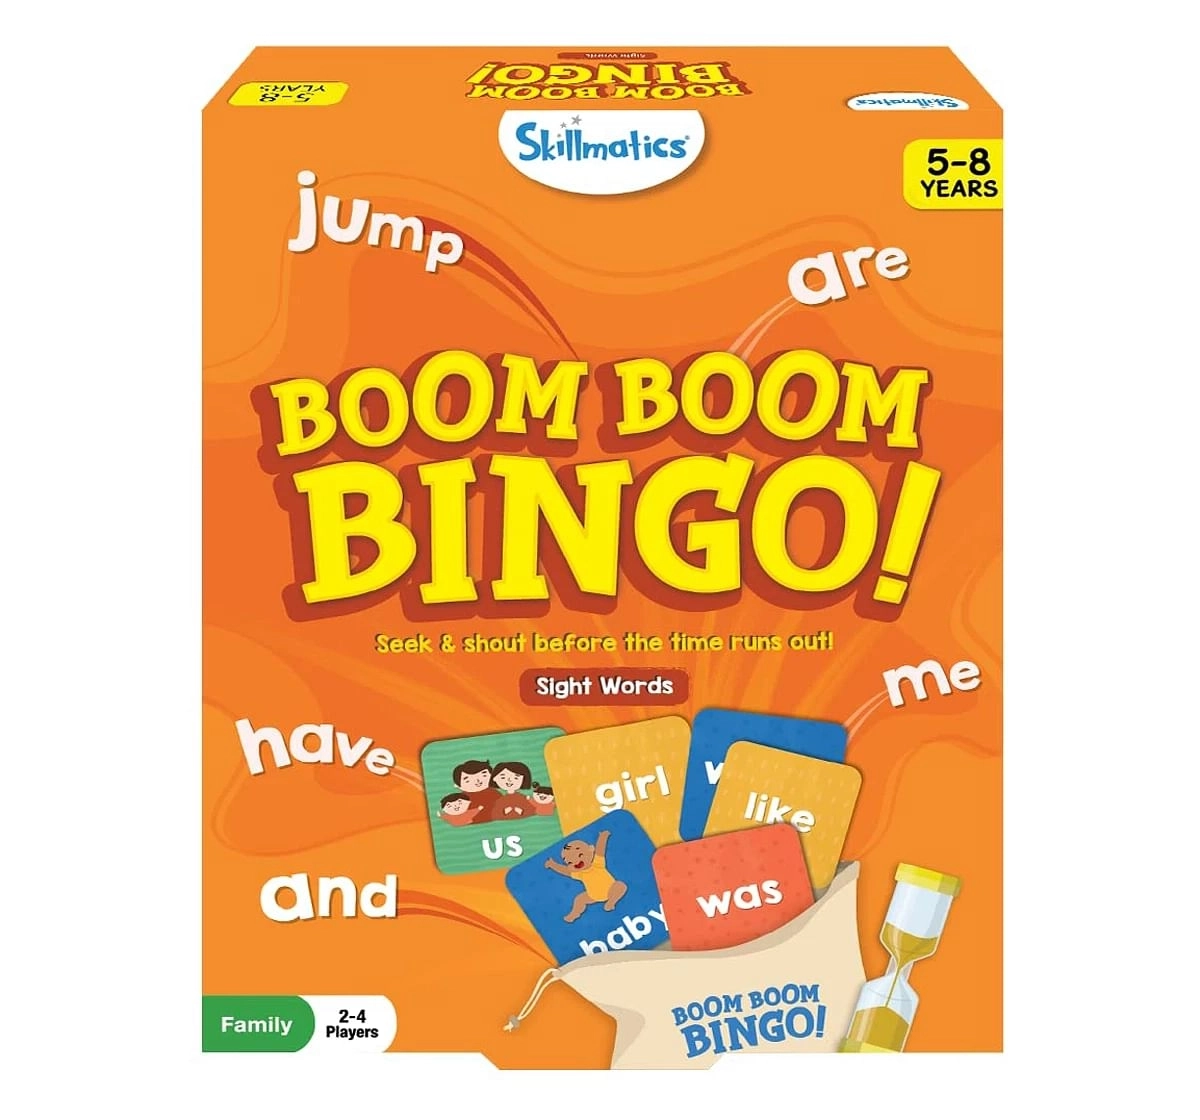 Skillmatics Boom Boom Bingo Sight Words Multicolor 4Y+